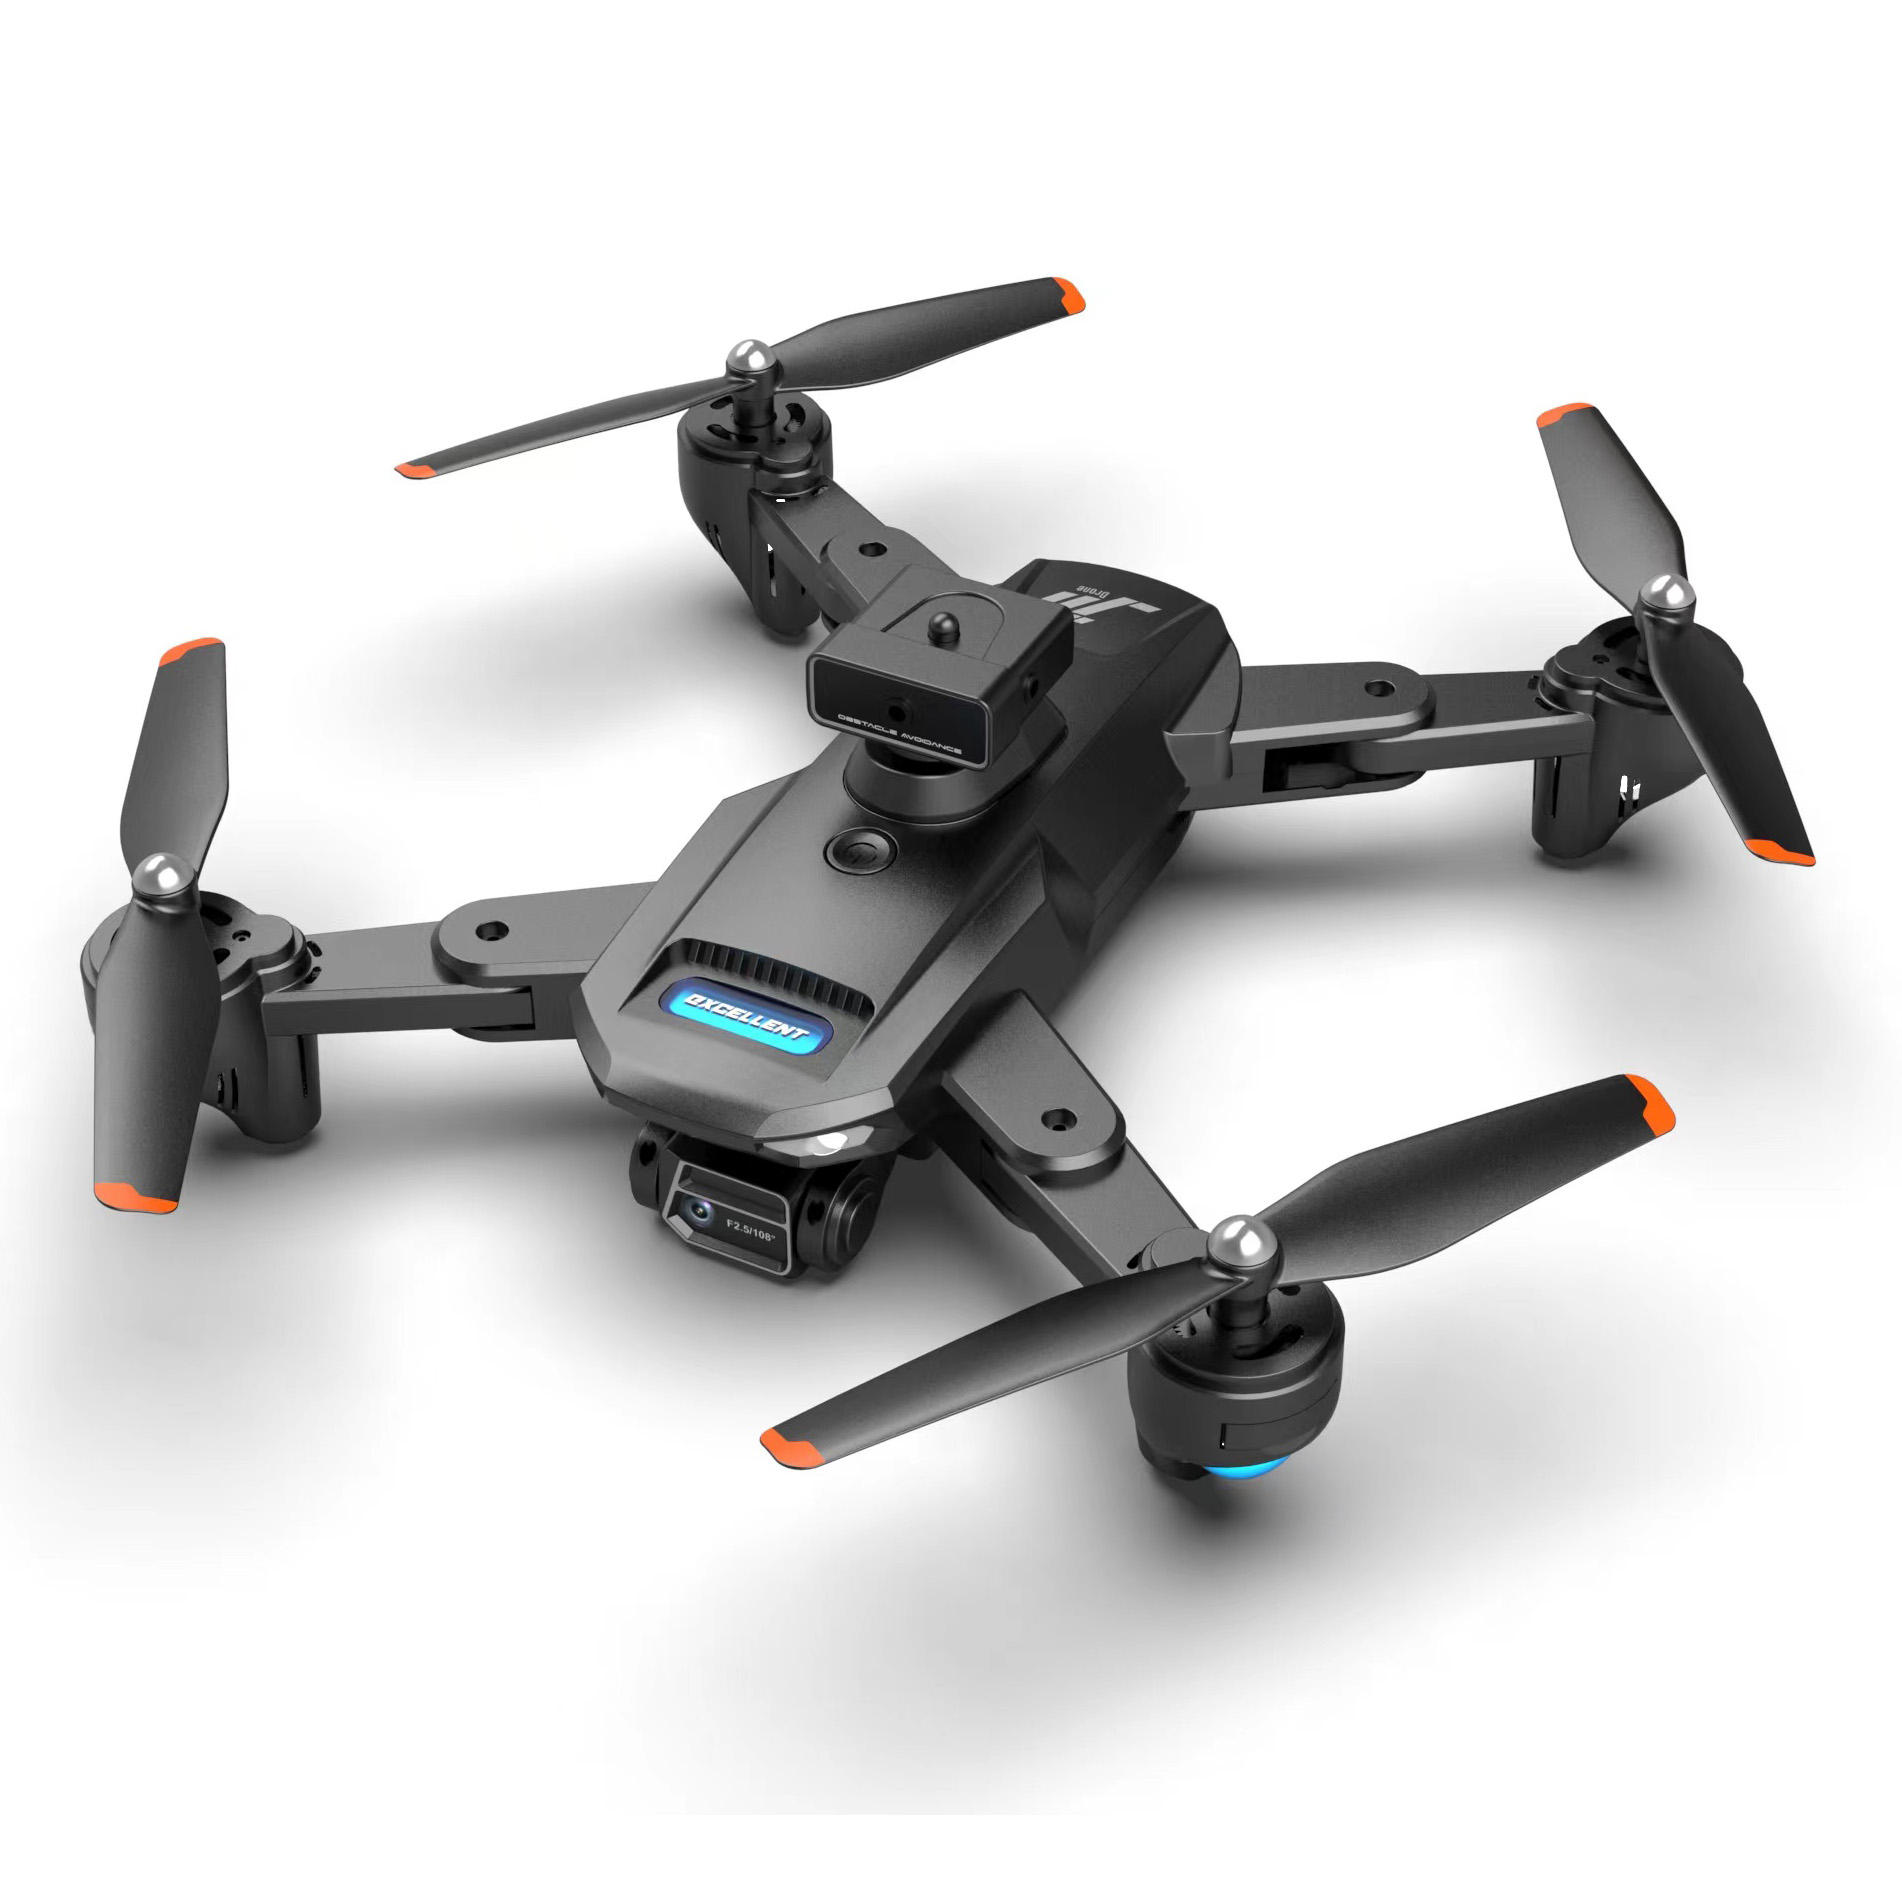 Super Ausdauer, 12 Minuten Flugzeit, 720P HD, Dual-Kamera-Schalter, faltbare Quadrocopter-Drohne für Anfänger